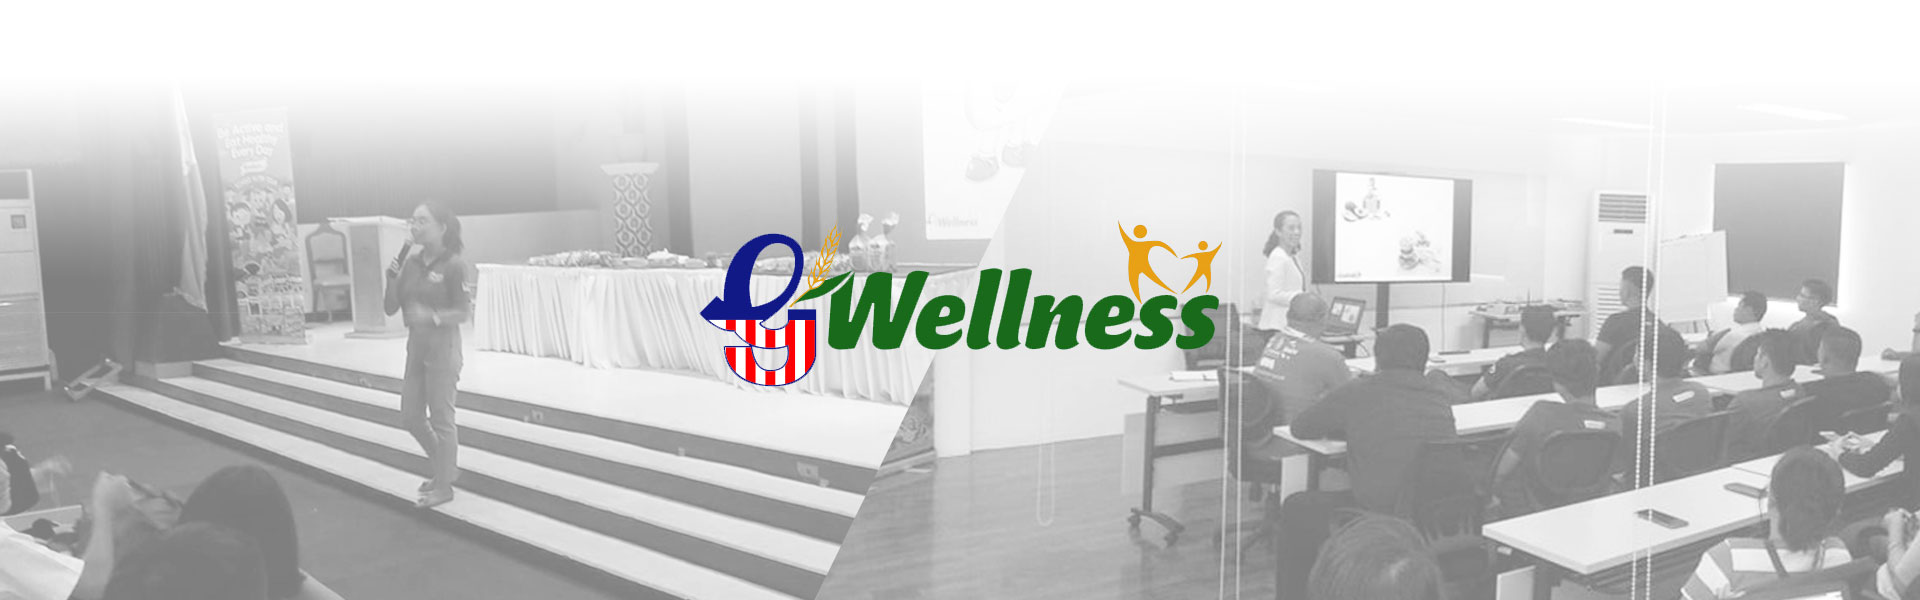 Wellness Team Banner